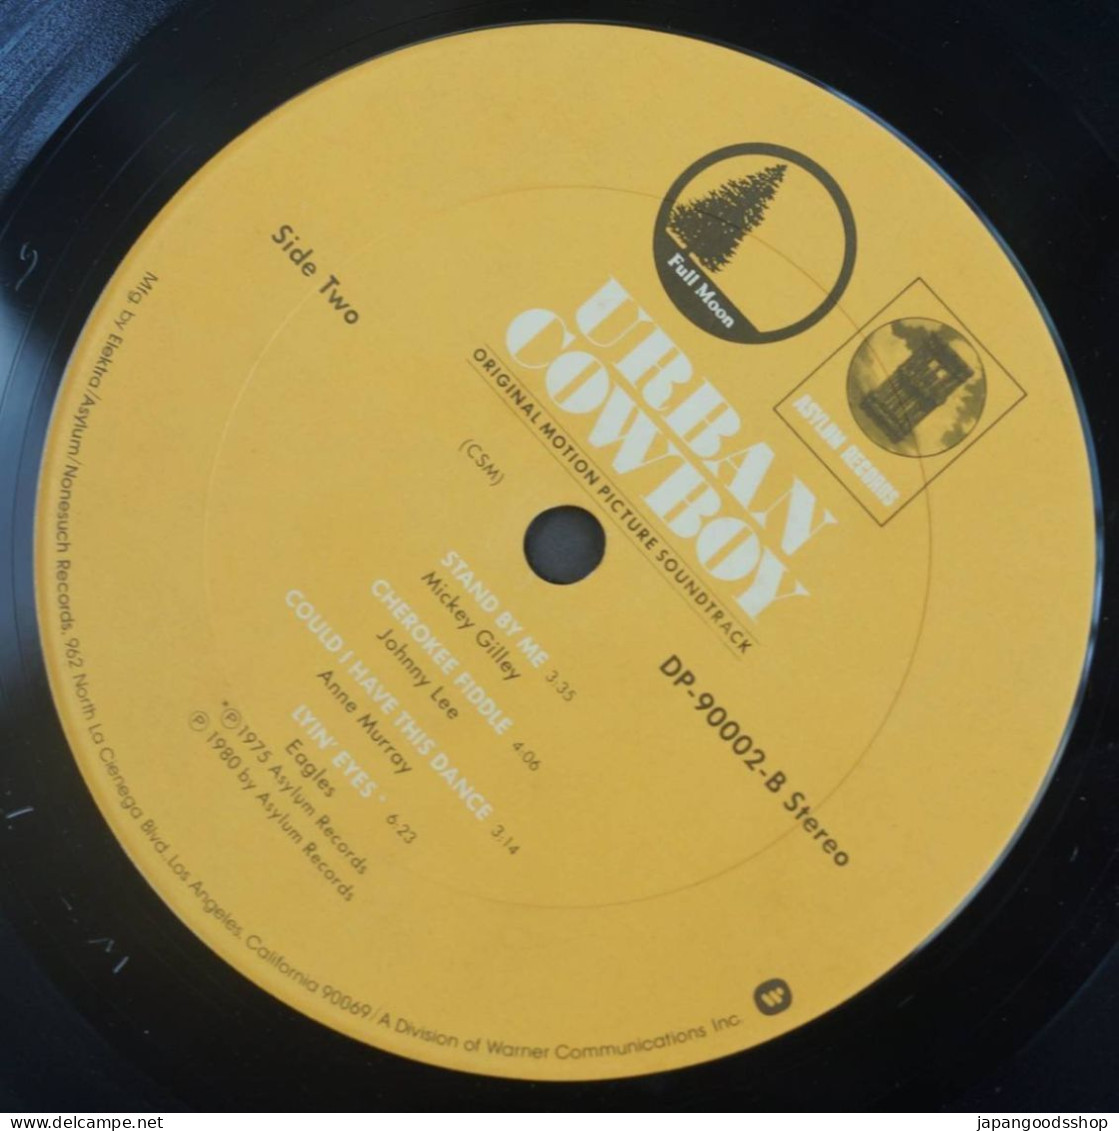 Vinyl LP : Urban Cow Boy OST ( Asylum Records DP-90002 )